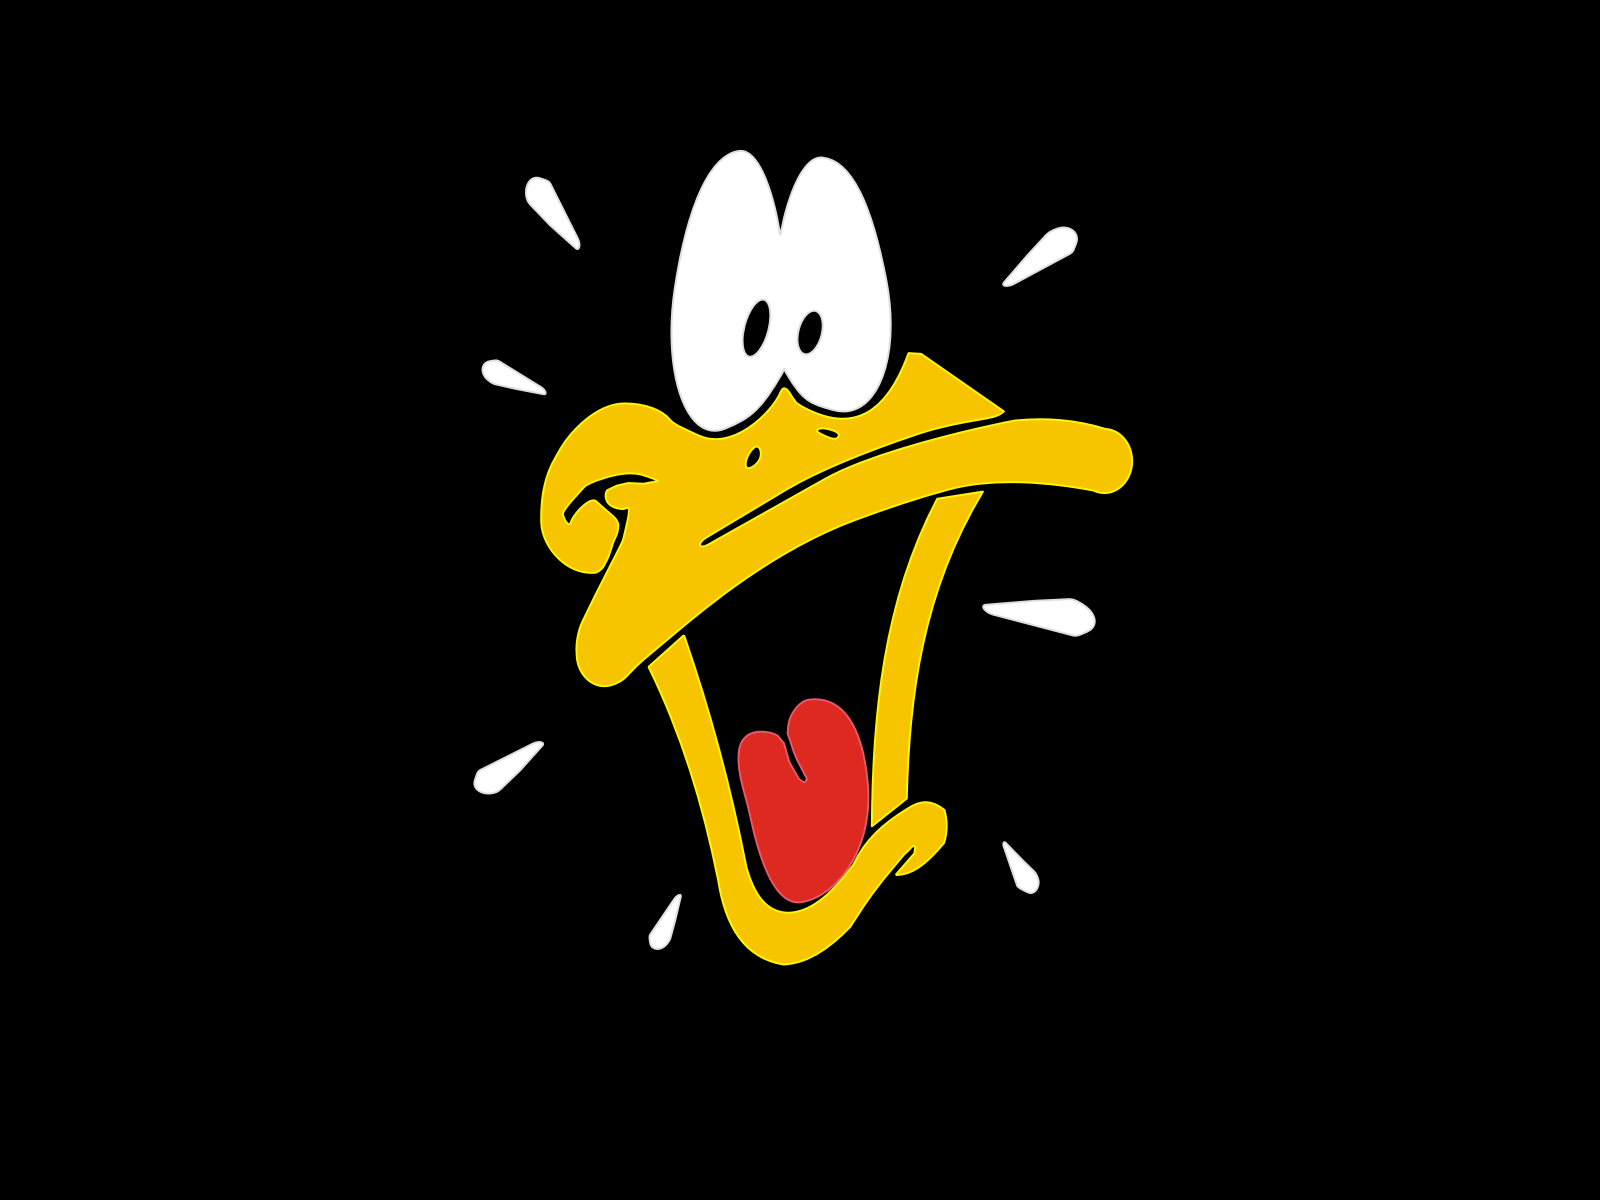 Daffy-Duck-daffy-duck-12857012-1600-1200.gif